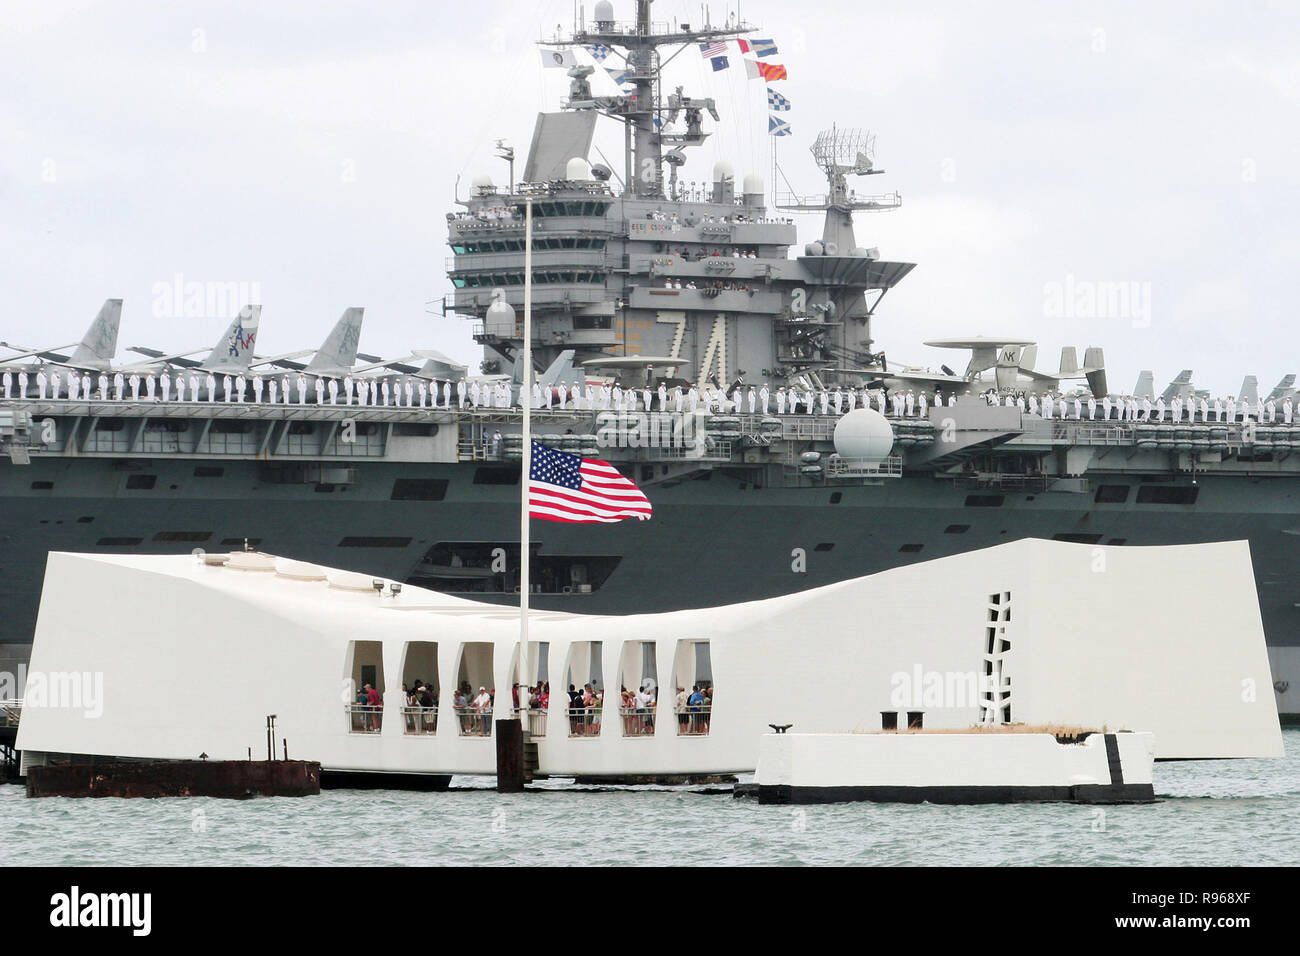 Matrosen an Bord der USS John C Stennis (CVN 74) ehrt die USS Arizona Memorial machen wie sie in Pearl Harbor, Hawaii ankommen. DoD Foto von Petty Officer 1st Class William R. Goodwin, US Navy. Stockfoto